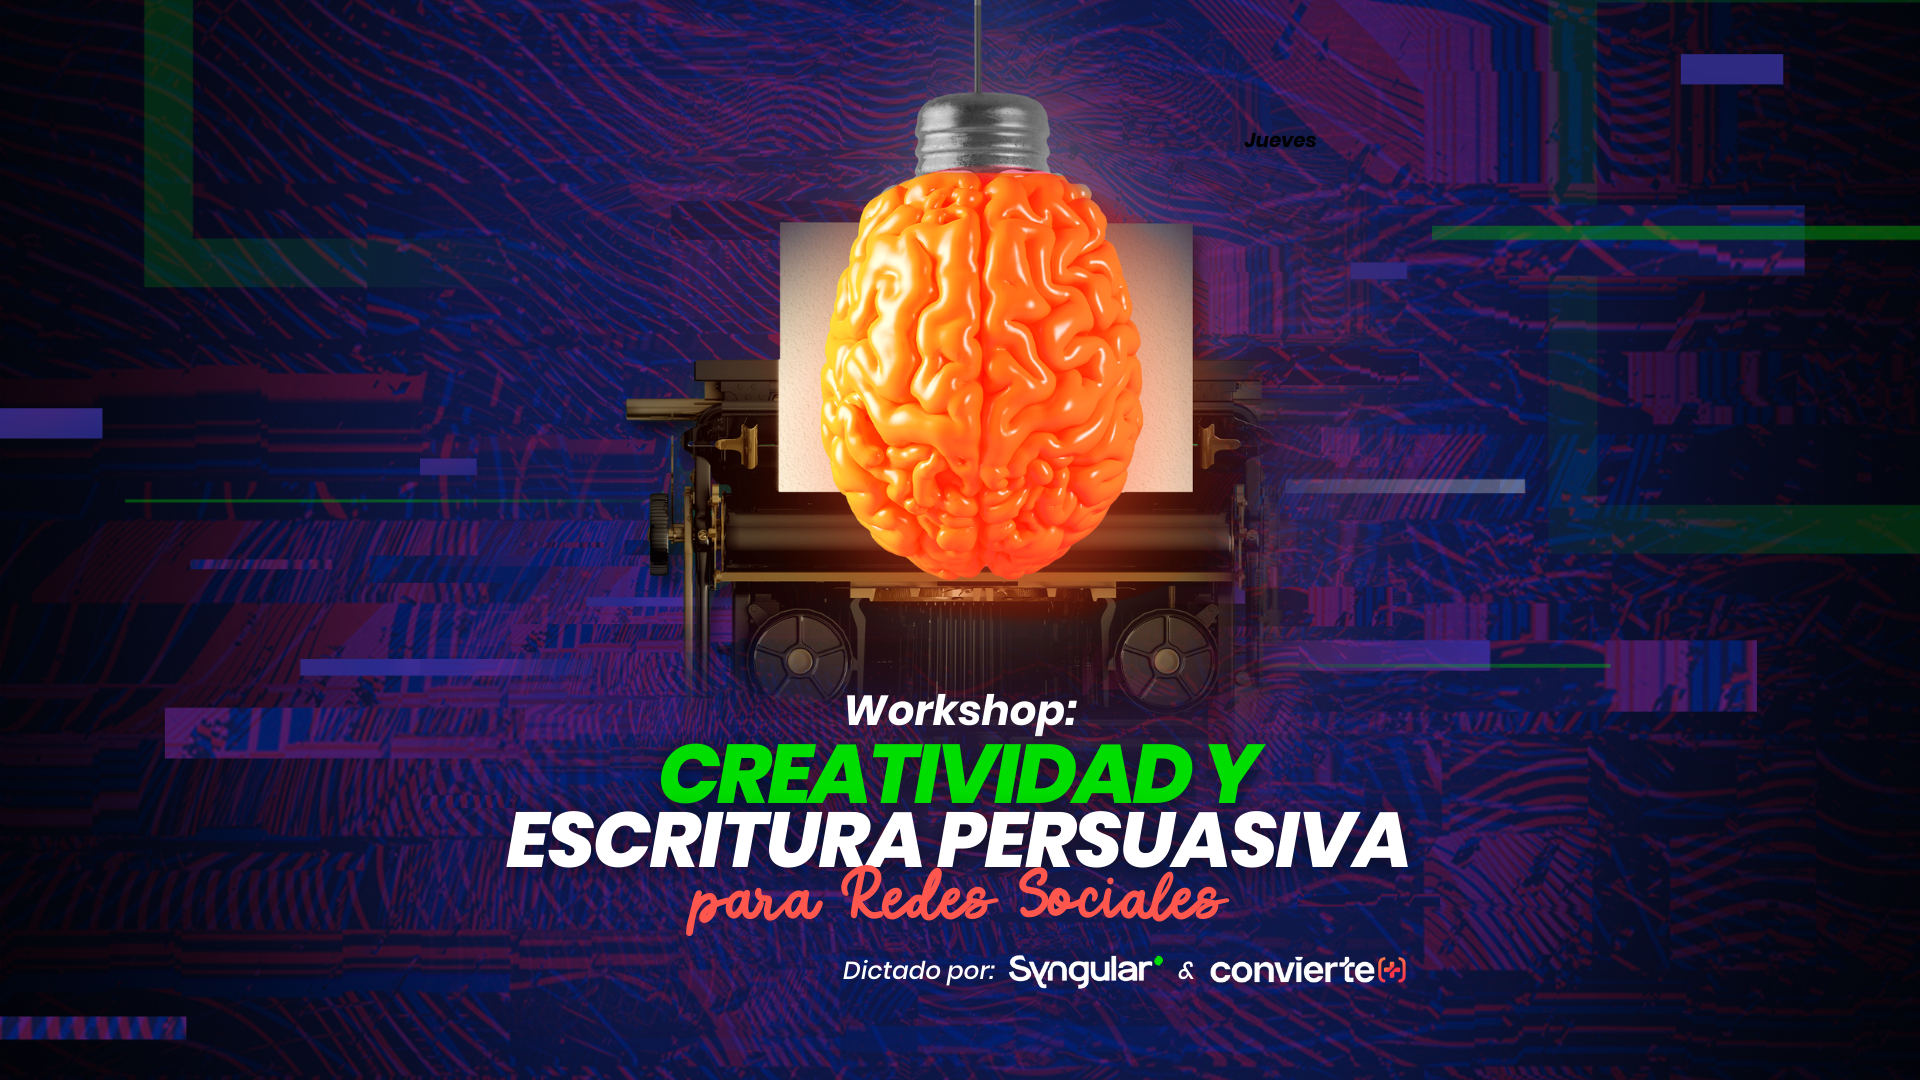 Workshop - Creatividad y Escritura persuasiva para redes sociales - Escuela Convierte +